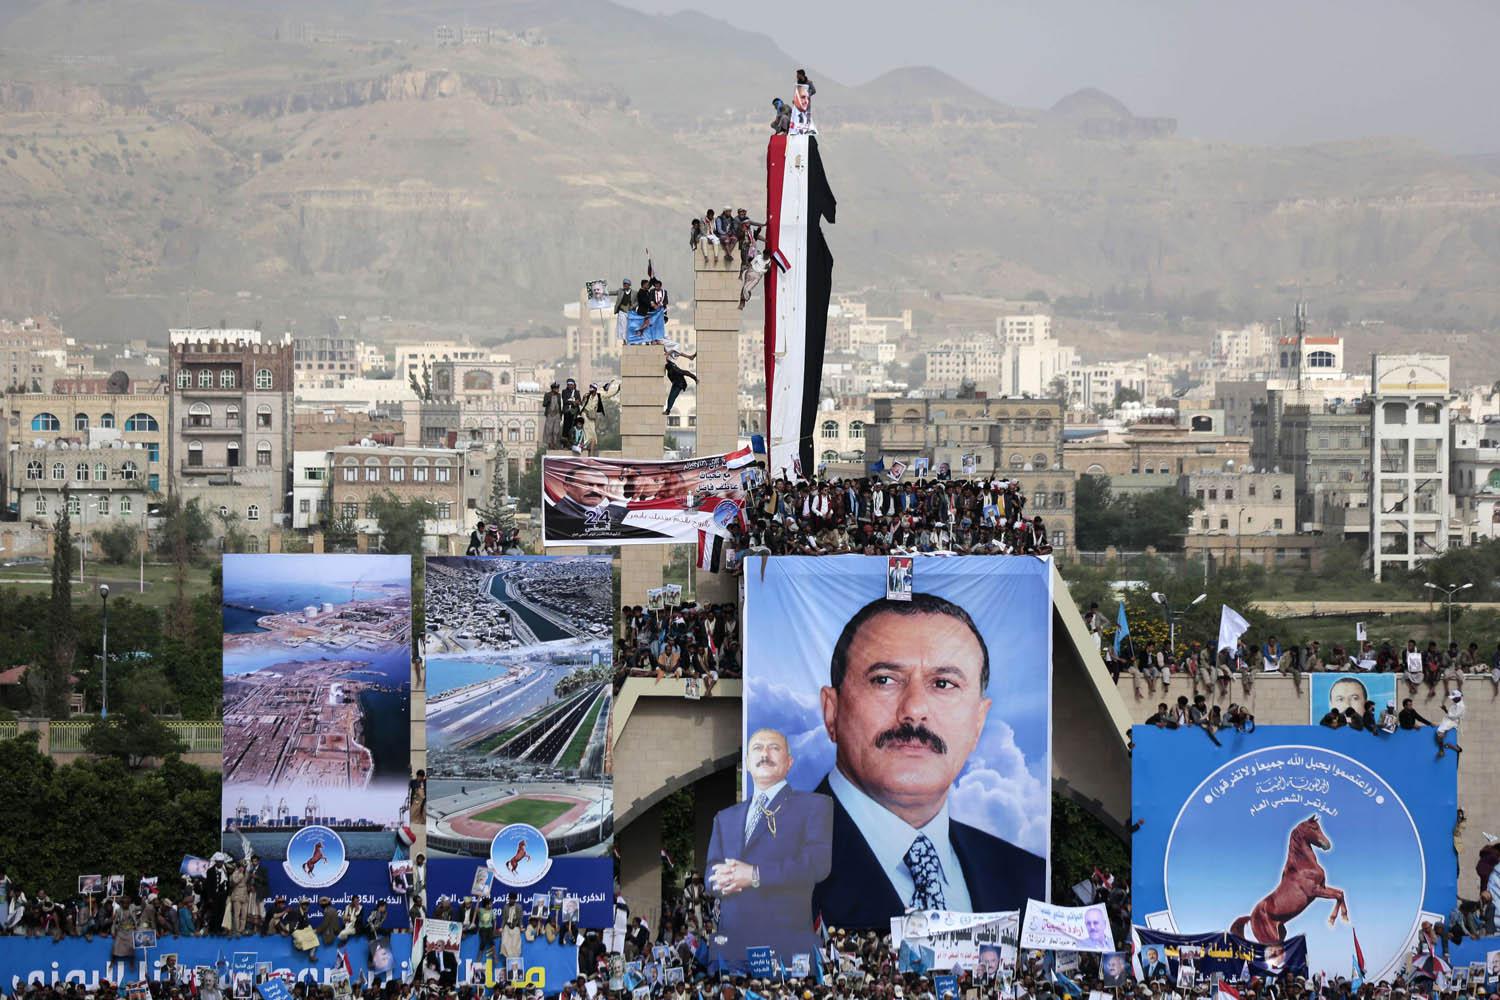 يمنيون يحتفلون في صنعاء بتأسيس "المؤتمر الشعبي العام" في اكتوبر 2017